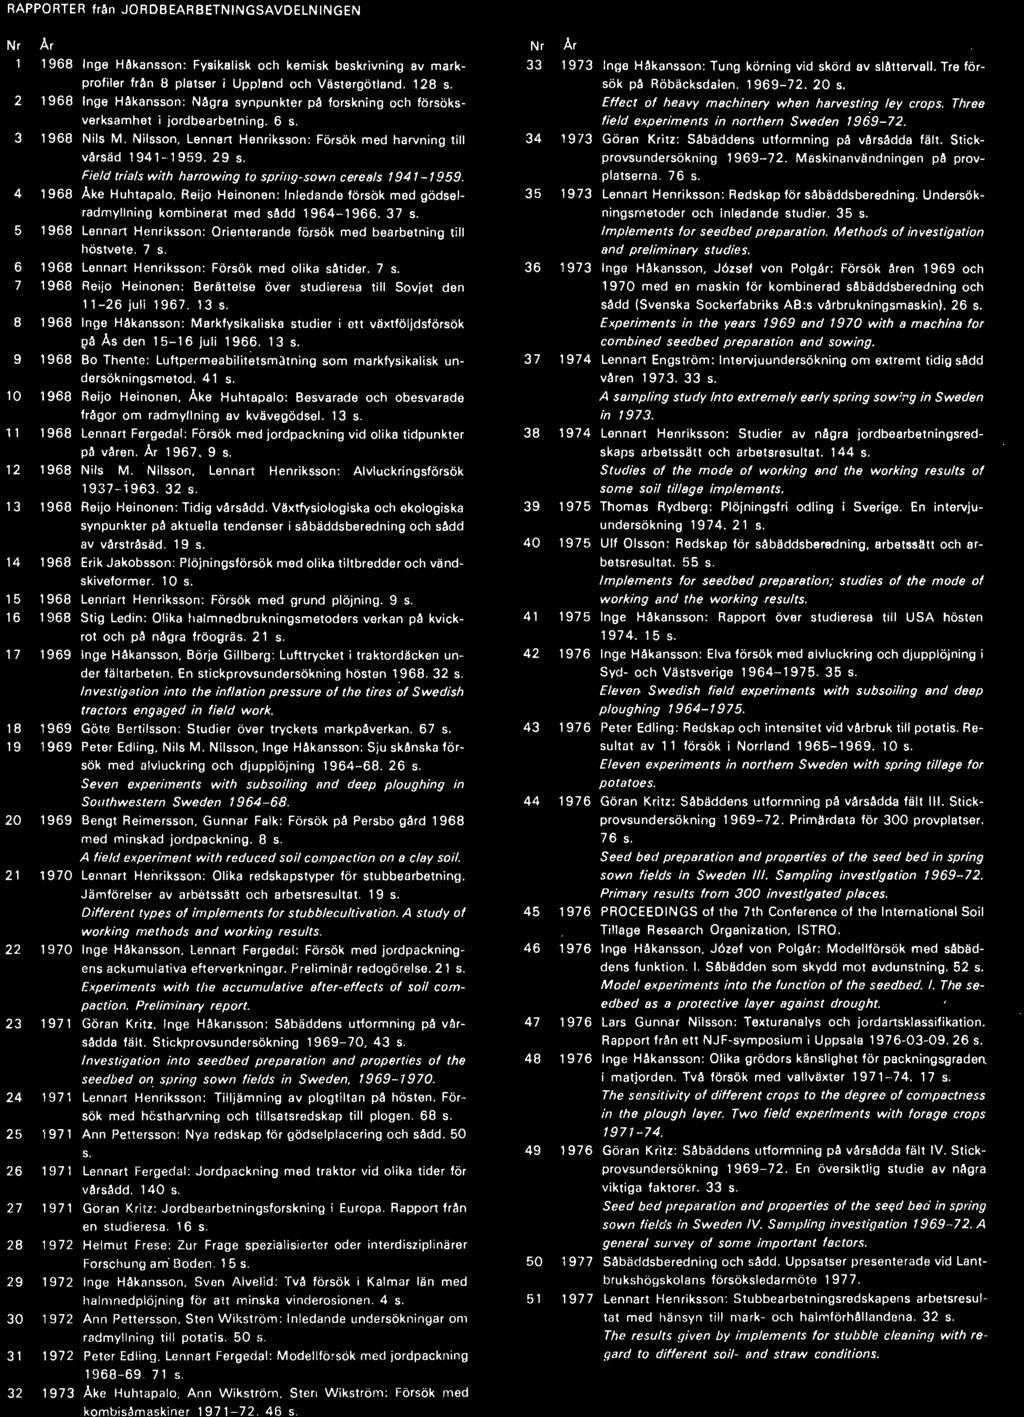 13 s. 8 1968 Inge Håkansson: Markfysikaliska studier i ett växtföljdsförsök I}å As den 15-16 juli 1966. 13 s. 9 1968 80 Thente: Luftpermeabilitetsmatning som markfysikalisk undersökningsmetod. 41 s.